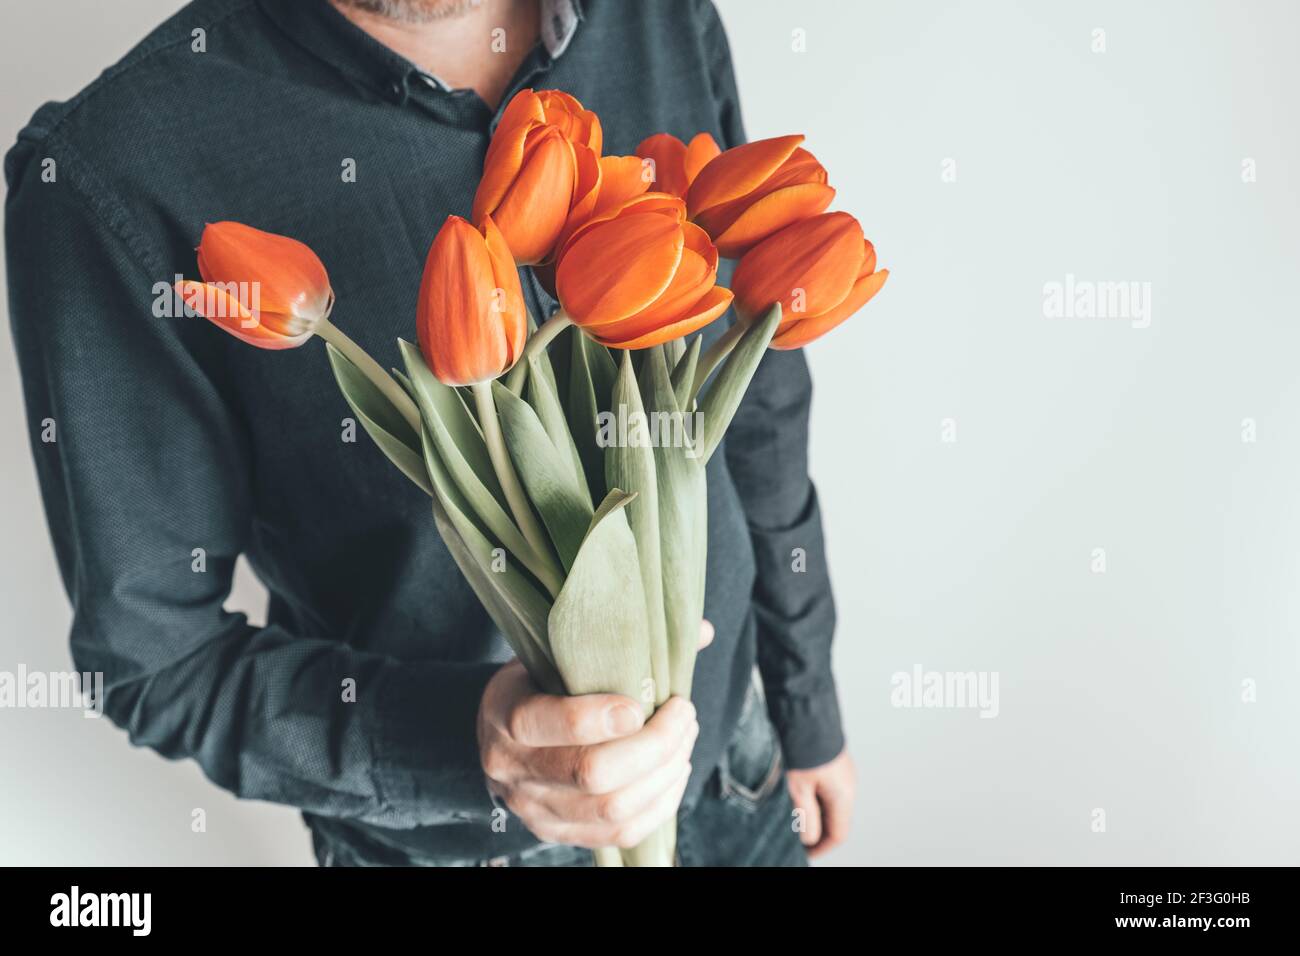 Un homme tient un bouquet de fleurs devant lui. Tulipes orange vif comme cadeau pour l'anniversaire, la Saint-Valentin, la Fête des mères, la Journée internationale de la femme. Banque D'Images